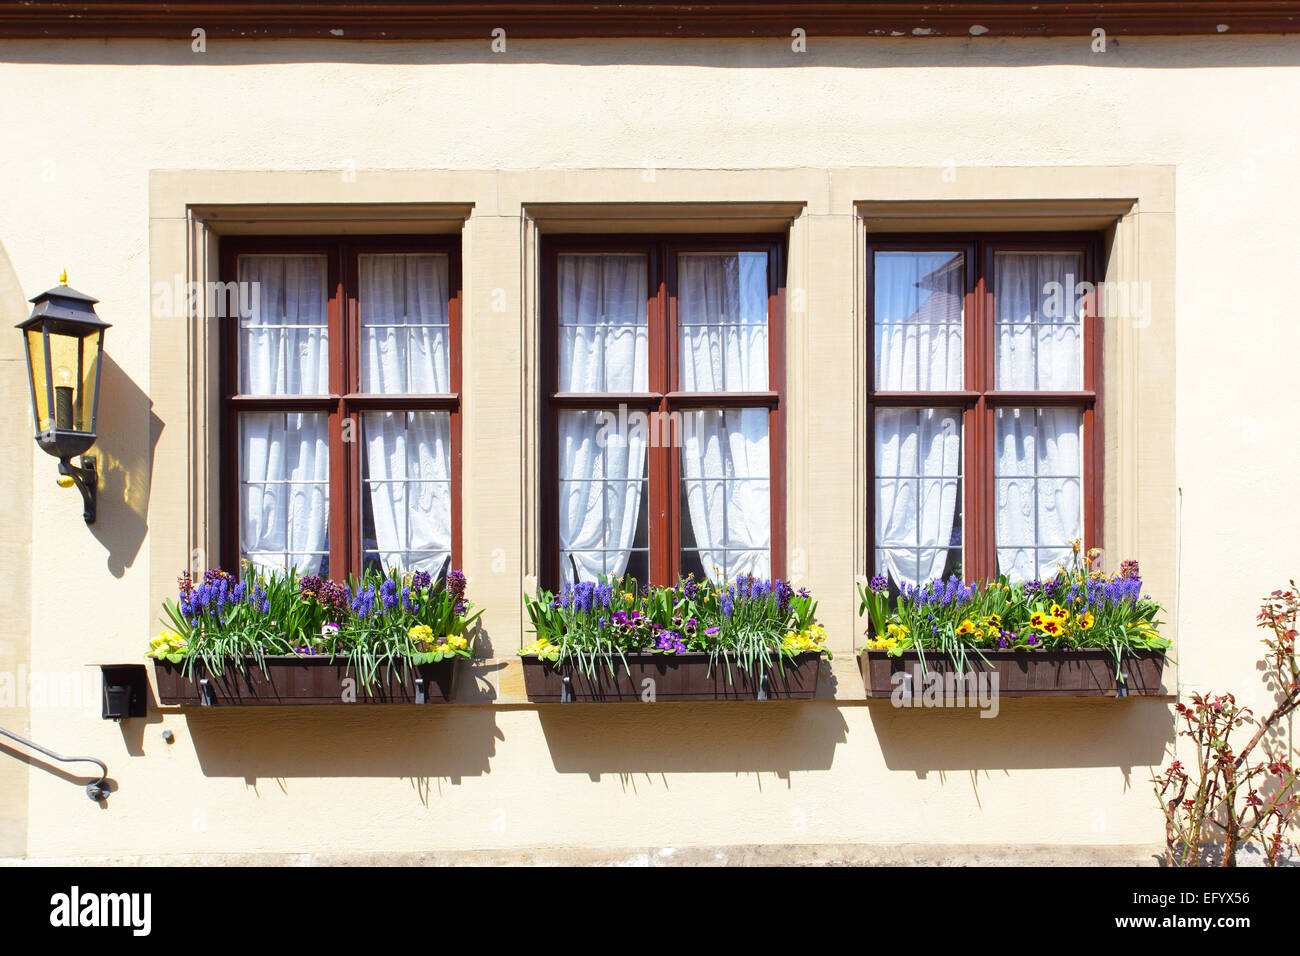 Maison ancienne de Windows avec des fleurs, Allemagne Banque D'Images